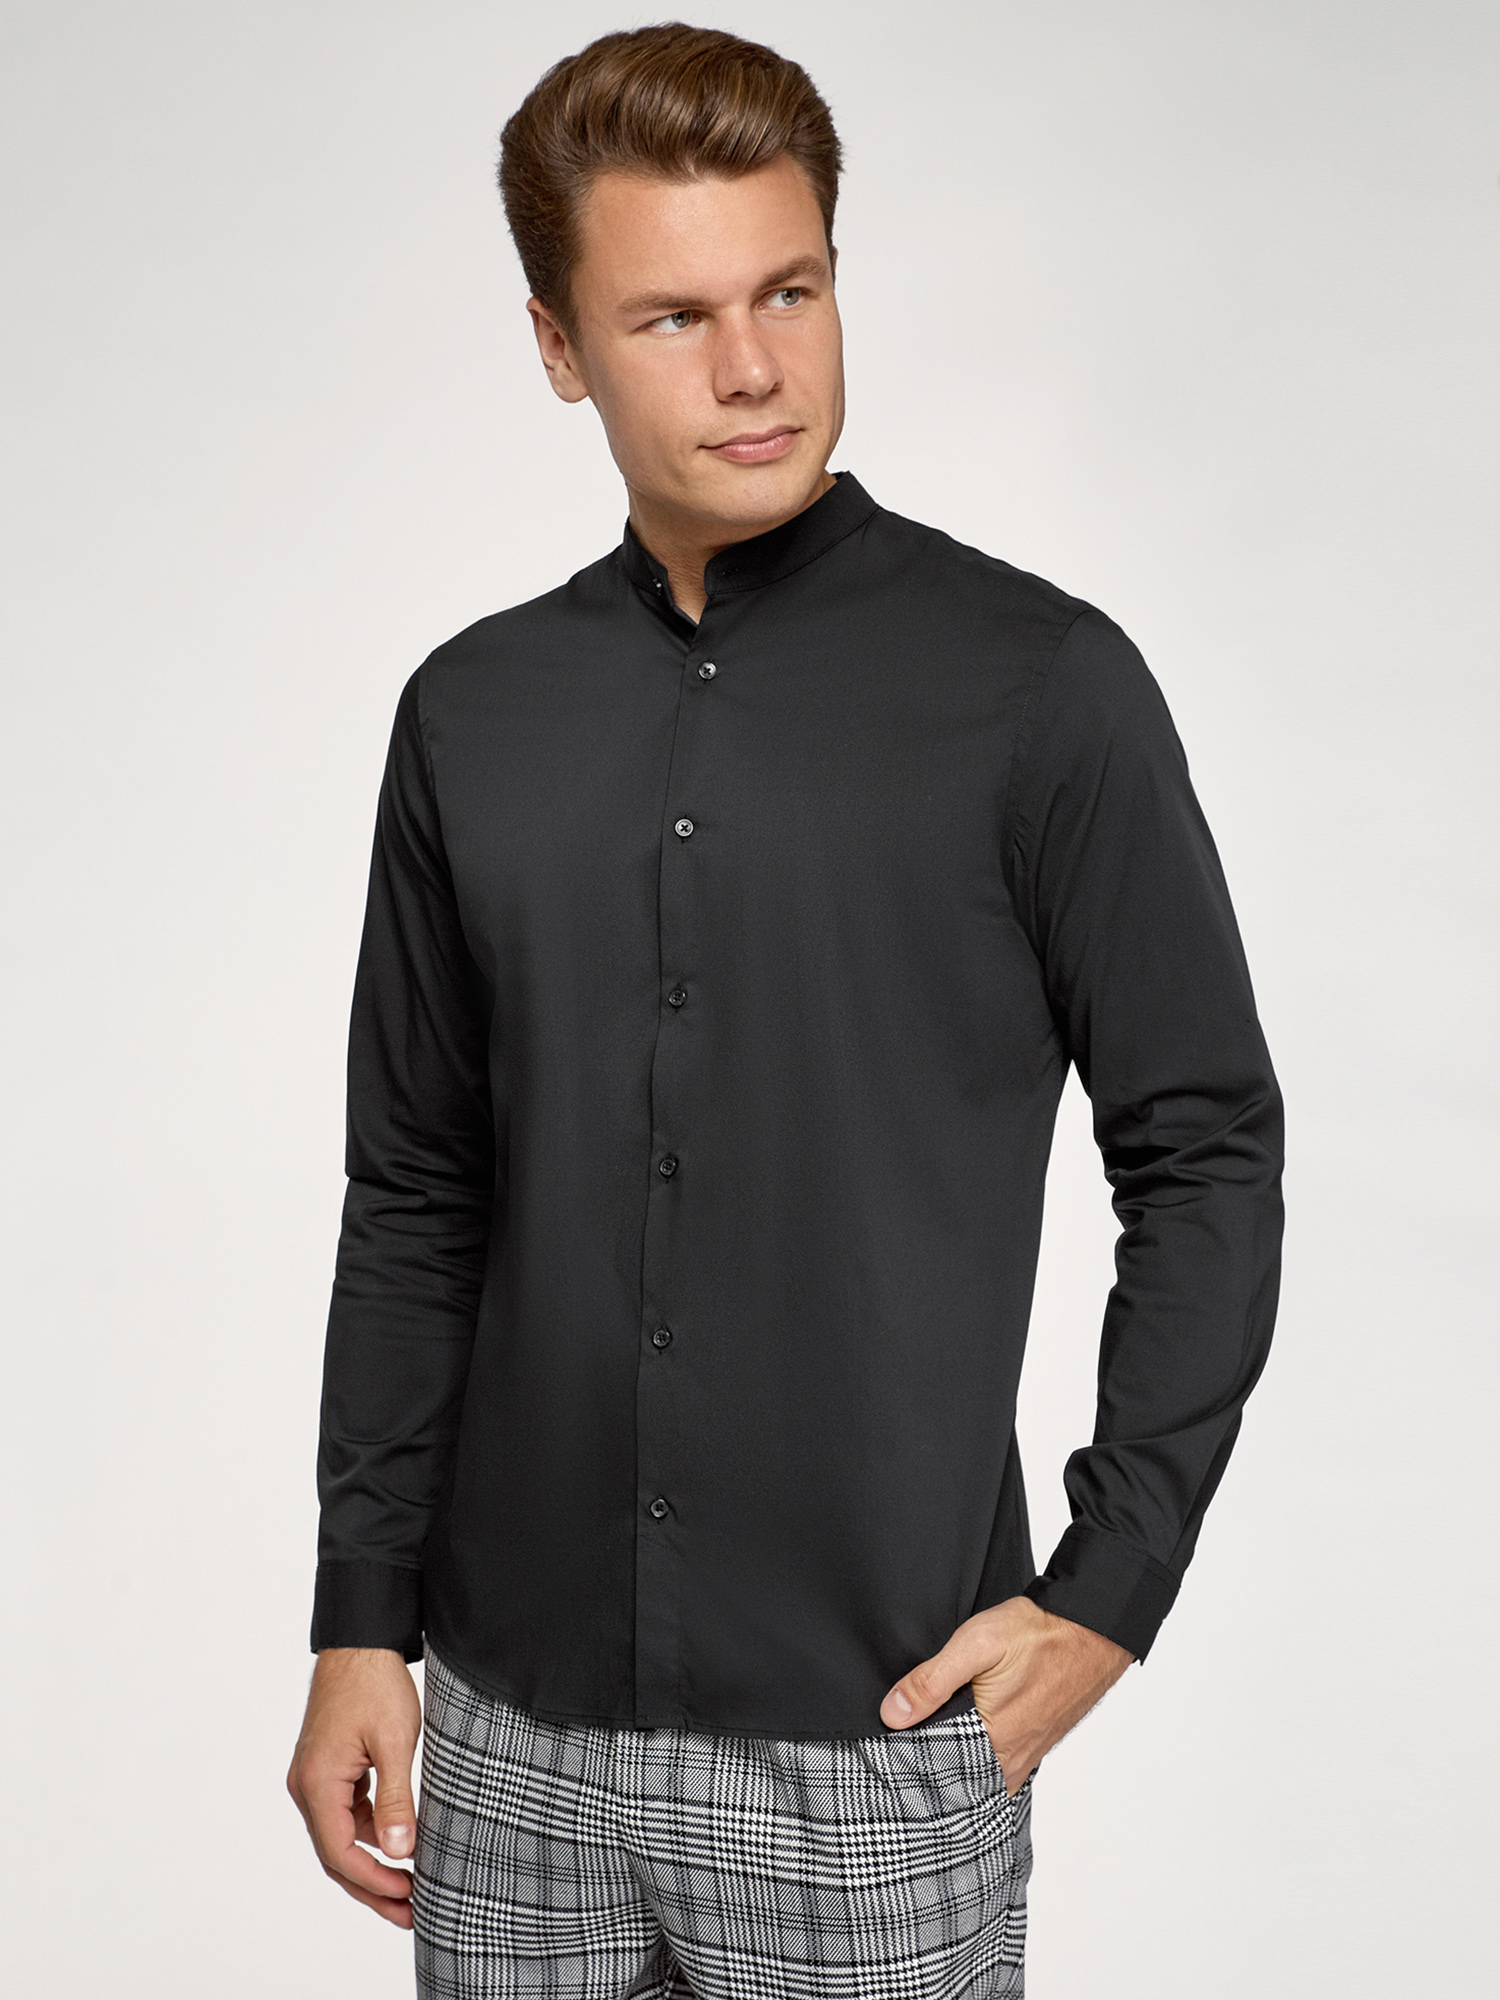 Рубашка мужская oodji 3B140004M черная S - купить в Москве, цены на Мегамаркет | 100032493812